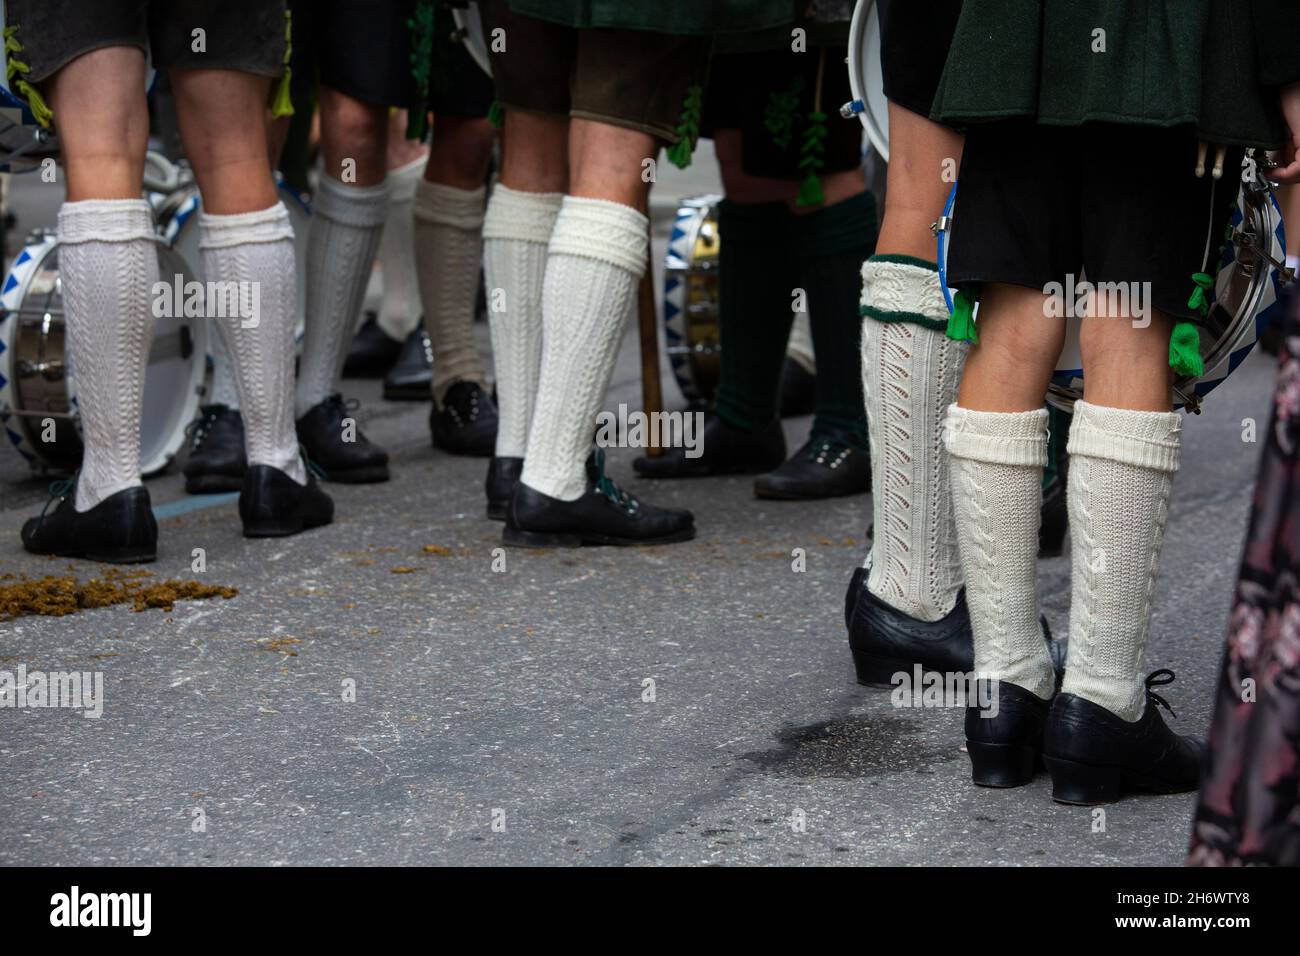 Un'immagine di calze tradizionali bavaresi indossate da giovani che frequentano il festival della birra dell'Octoberfest a Monaco. Foto Stock